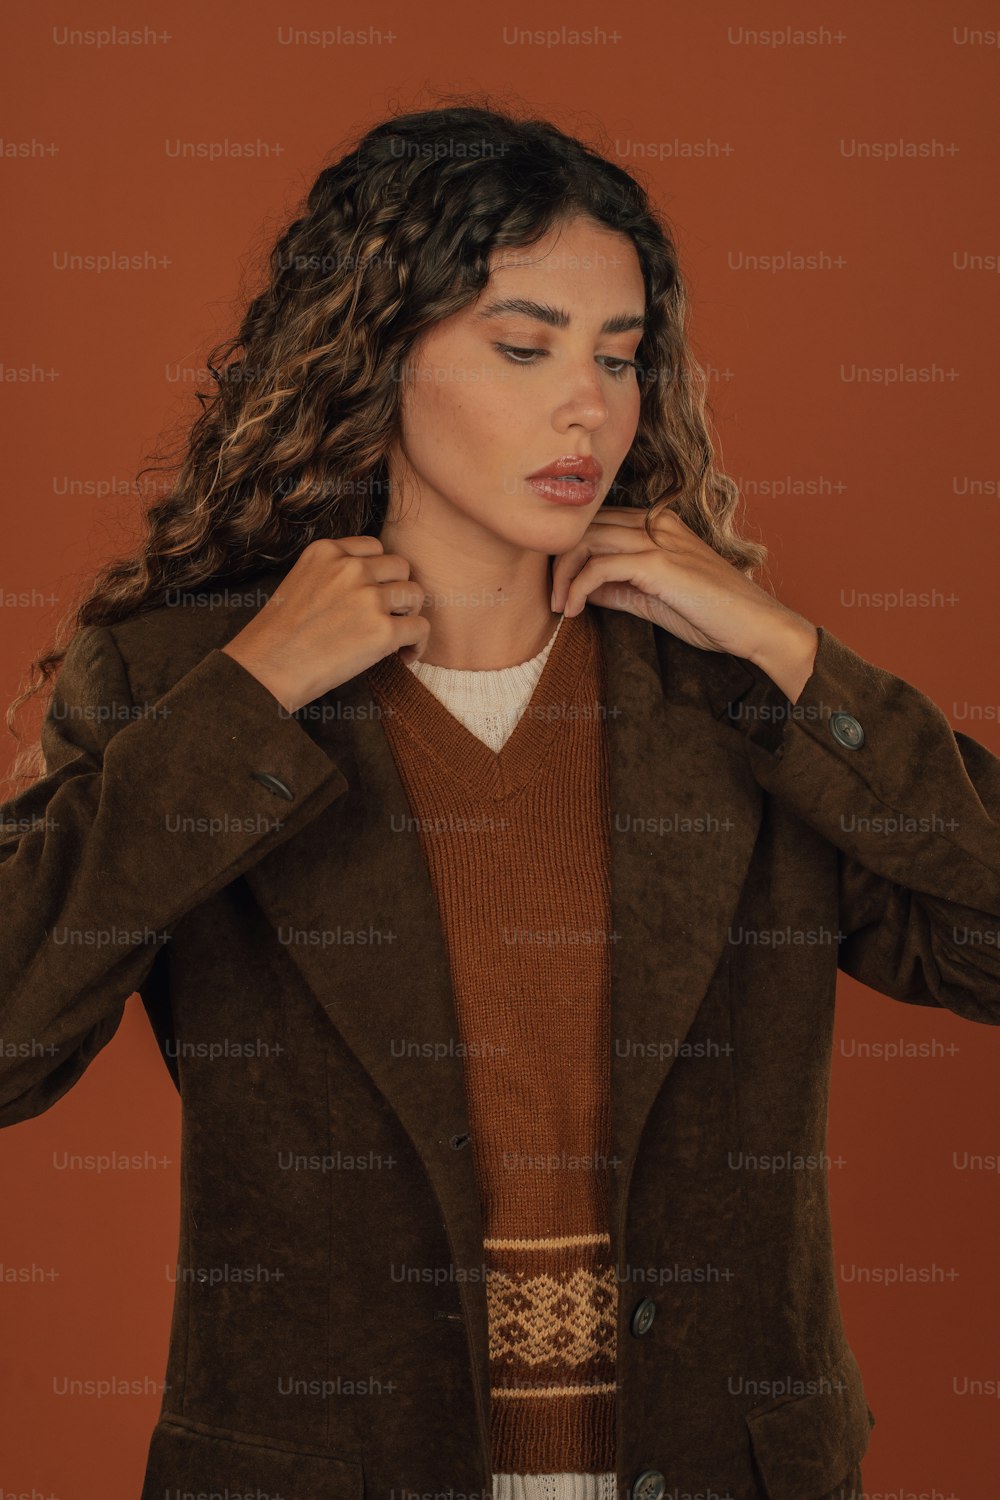 갈색 재킷과 갈색 스웨터를 입은 여자